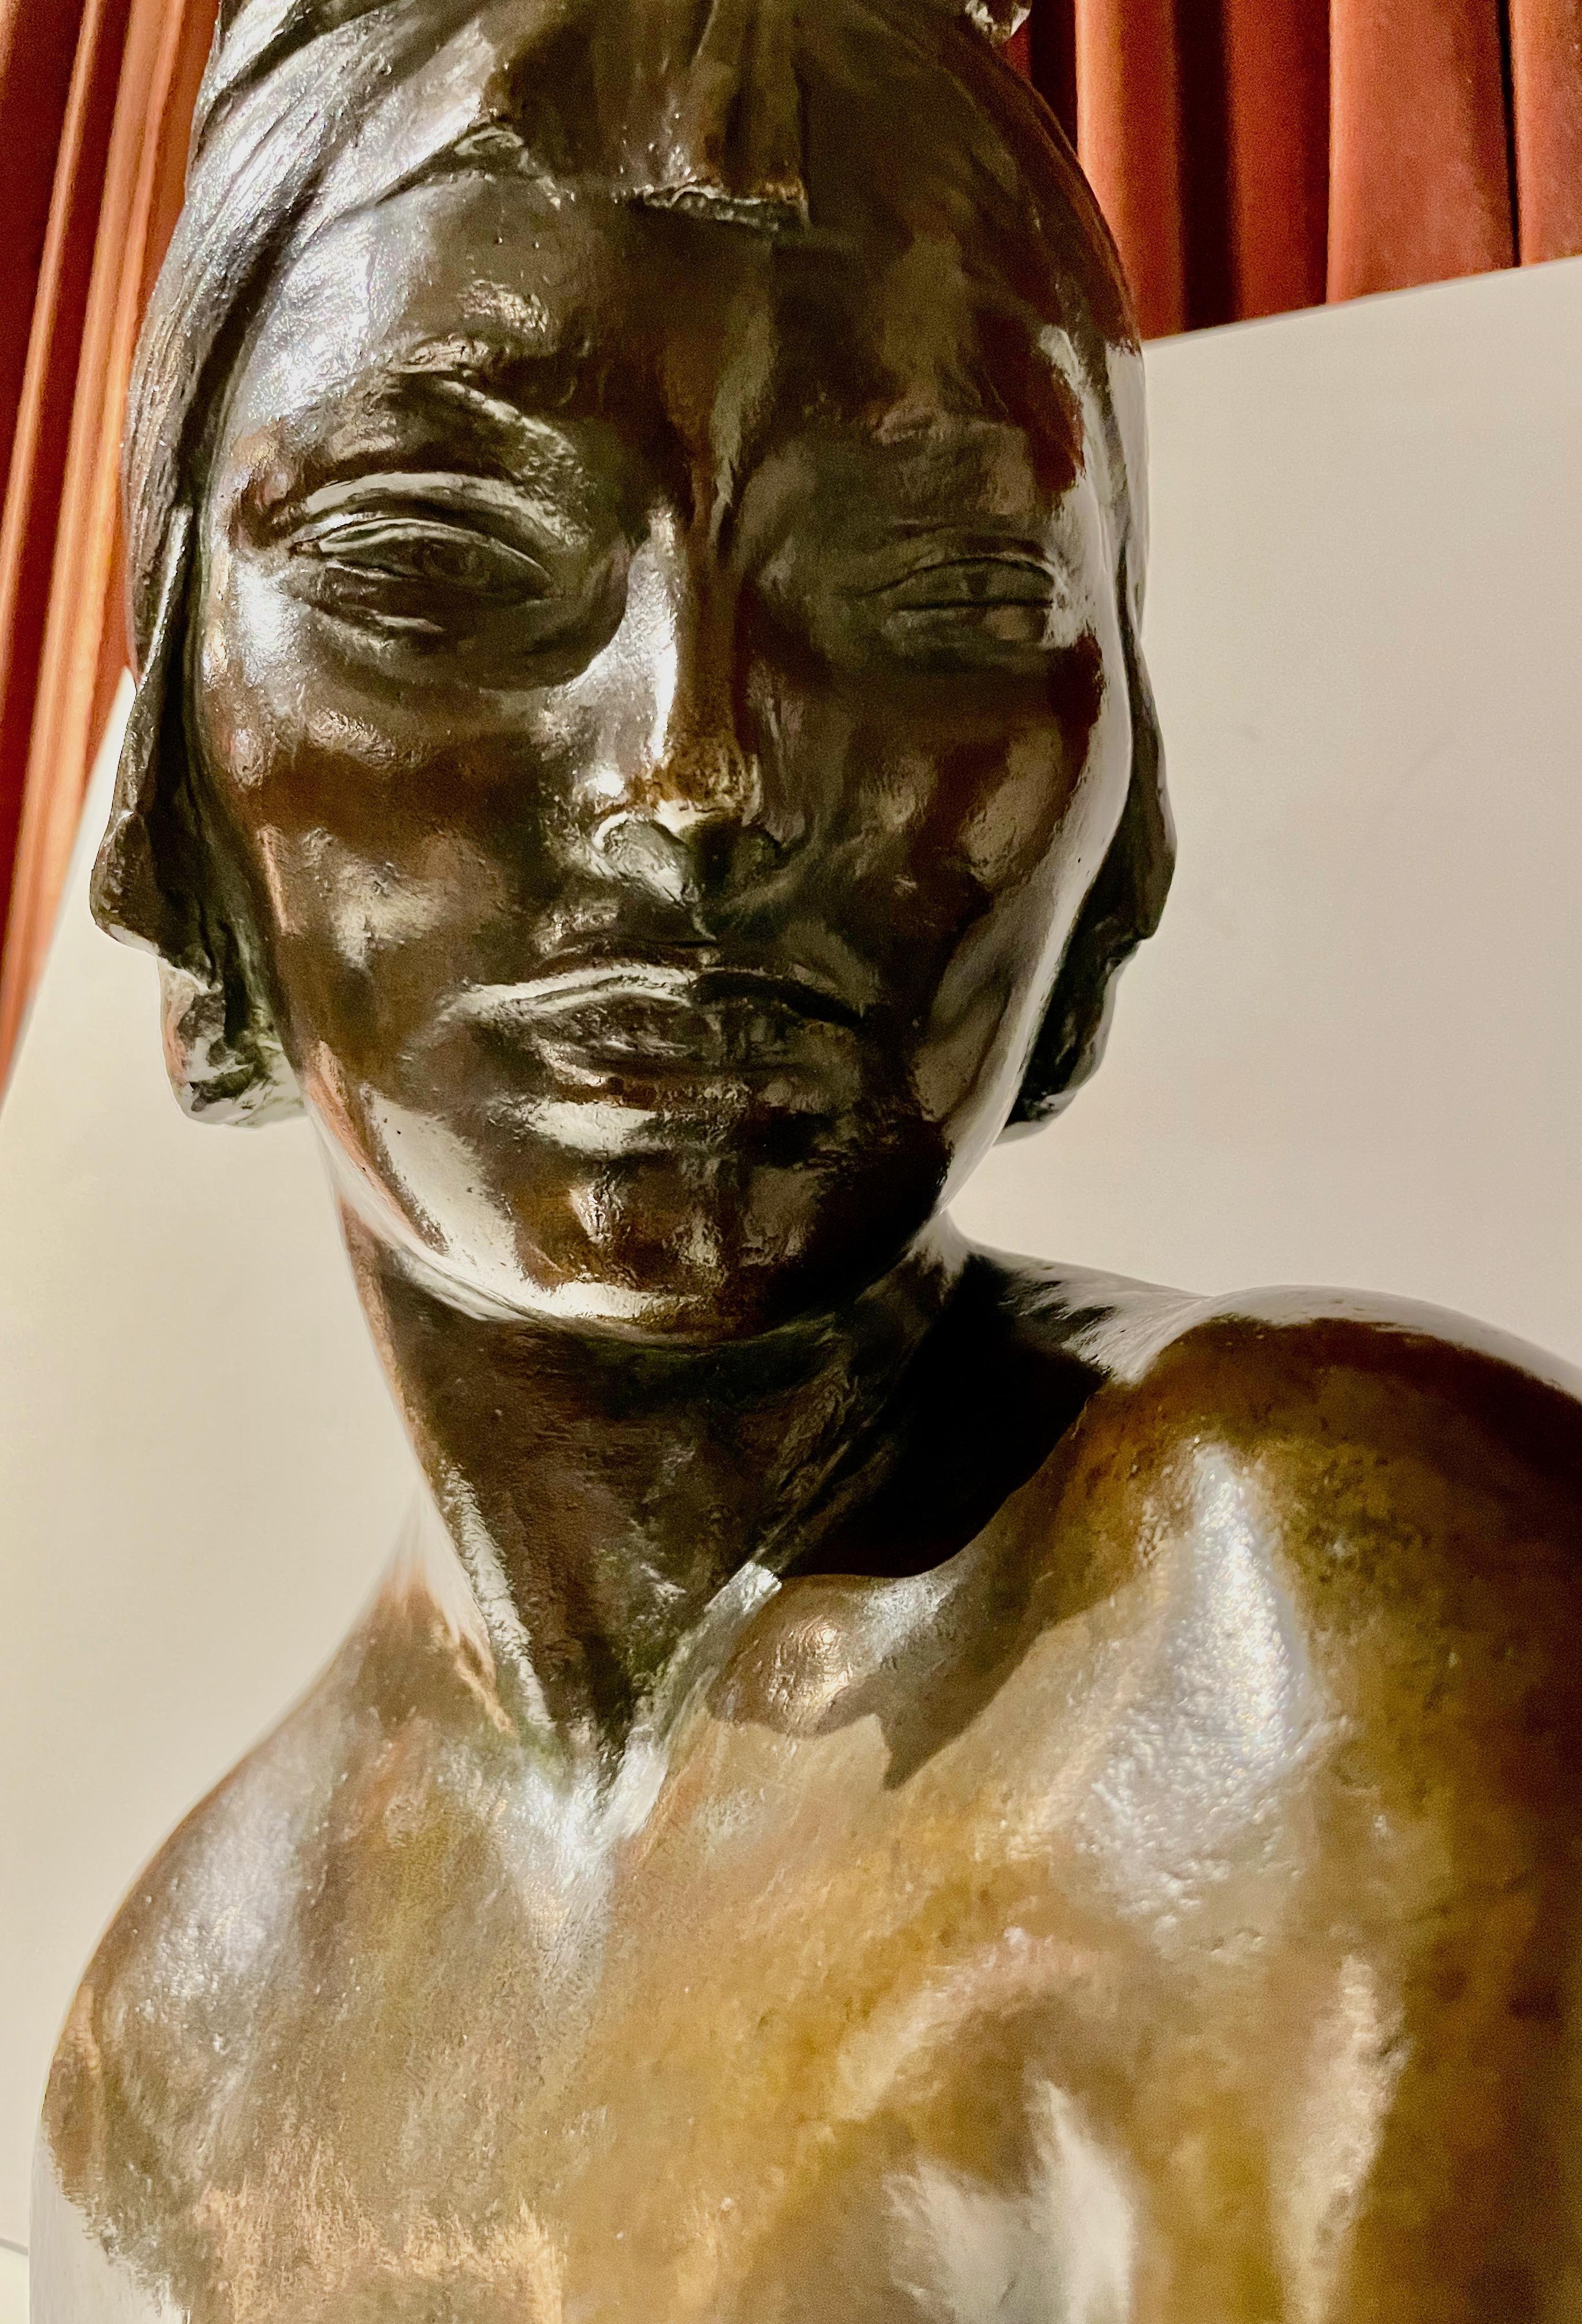 Un buste original en bronze patiné d'Amedeo Gennarelli vers 1925. Ce modèle légèrement nu est représenté de l'épaule, regardant vers l'avant, avec un turban stylisé sur la tête. Cette superbe patine de bronze profond a été signée dans la fonte